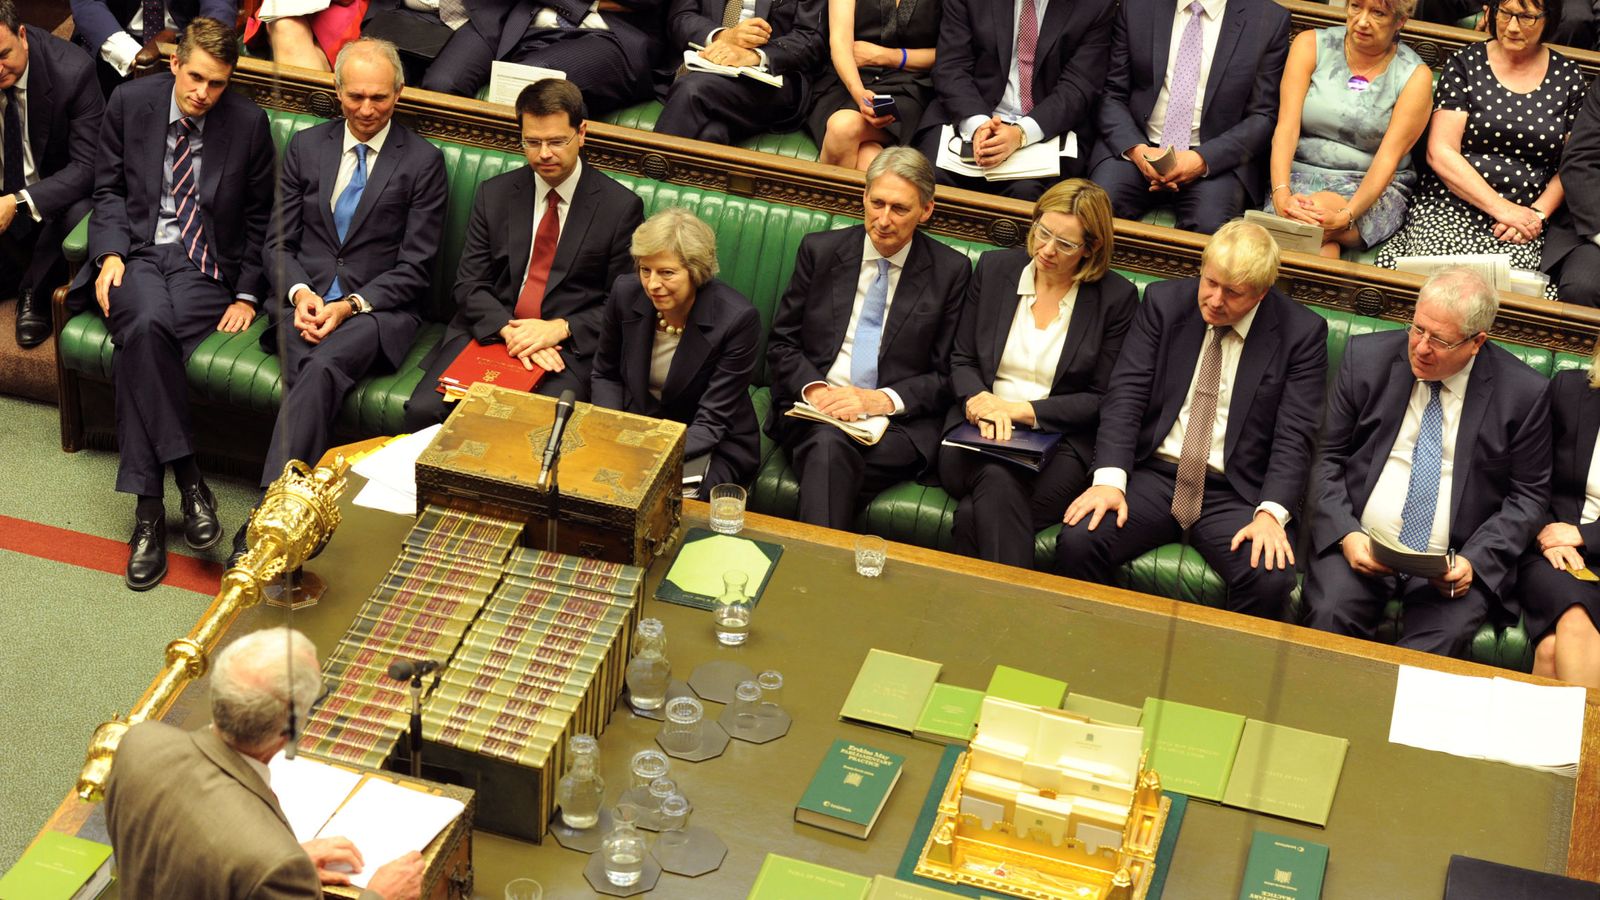 Foto: Theresa May escucha durante una sesión de preguntas en la Cámara de los Comunes, el 20 de julio de 2016 (Reuters)